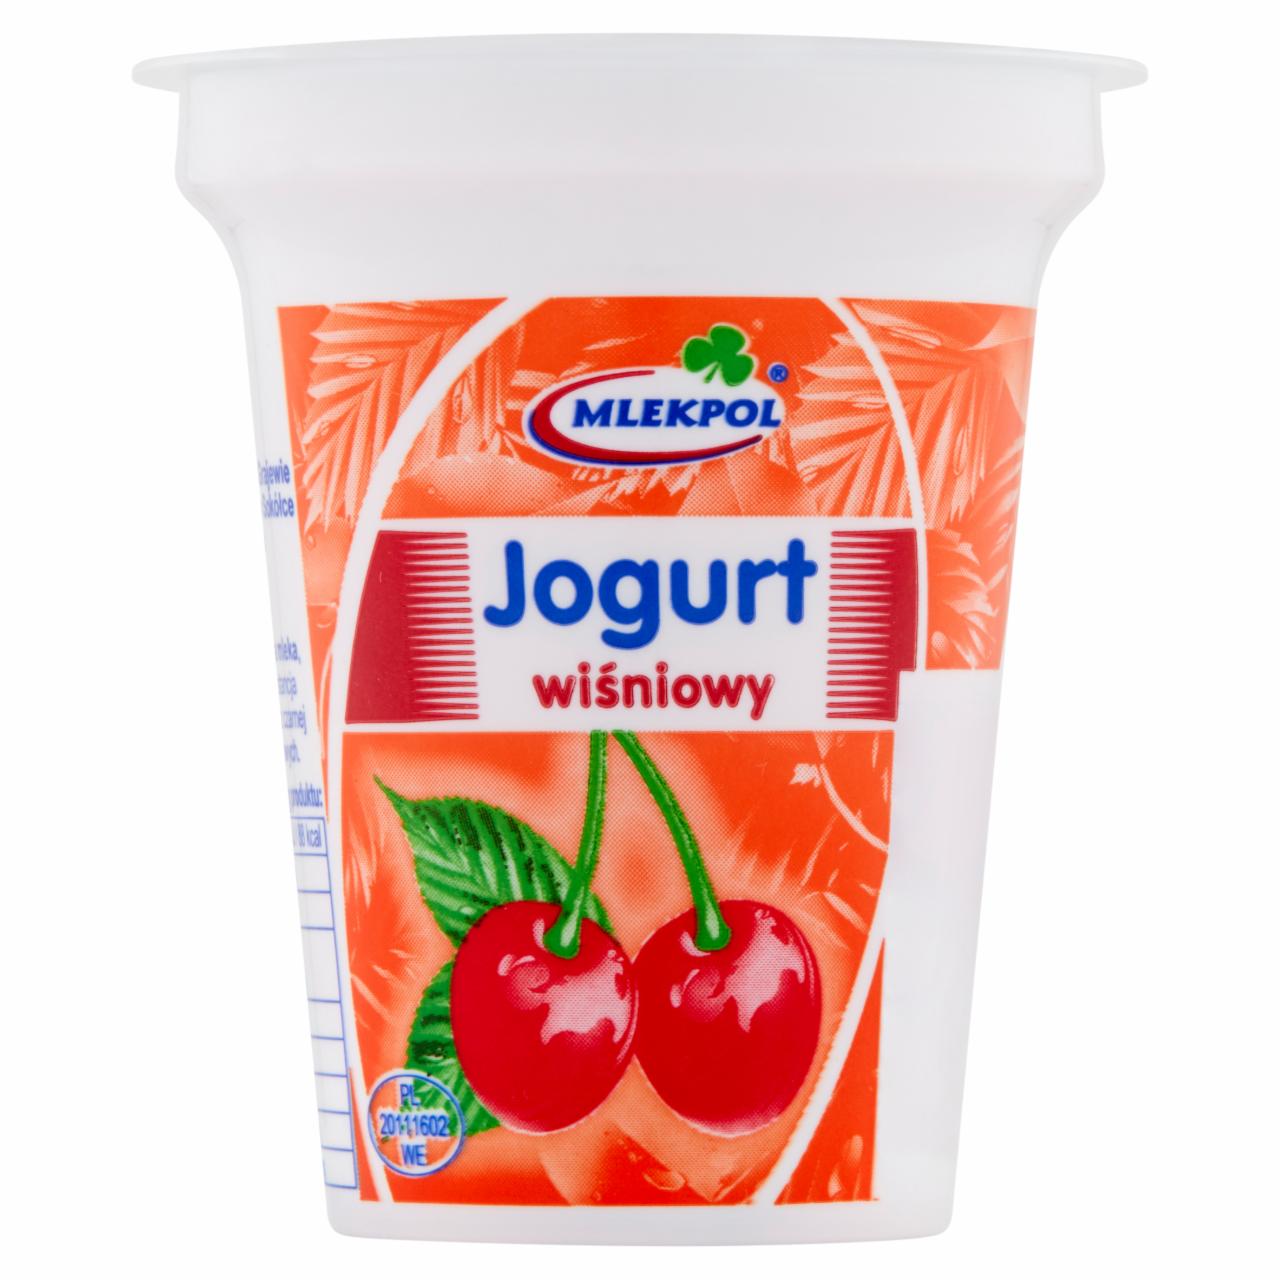 Zdjęcia - Mlekpol Jogurt wiśniowy 150 g